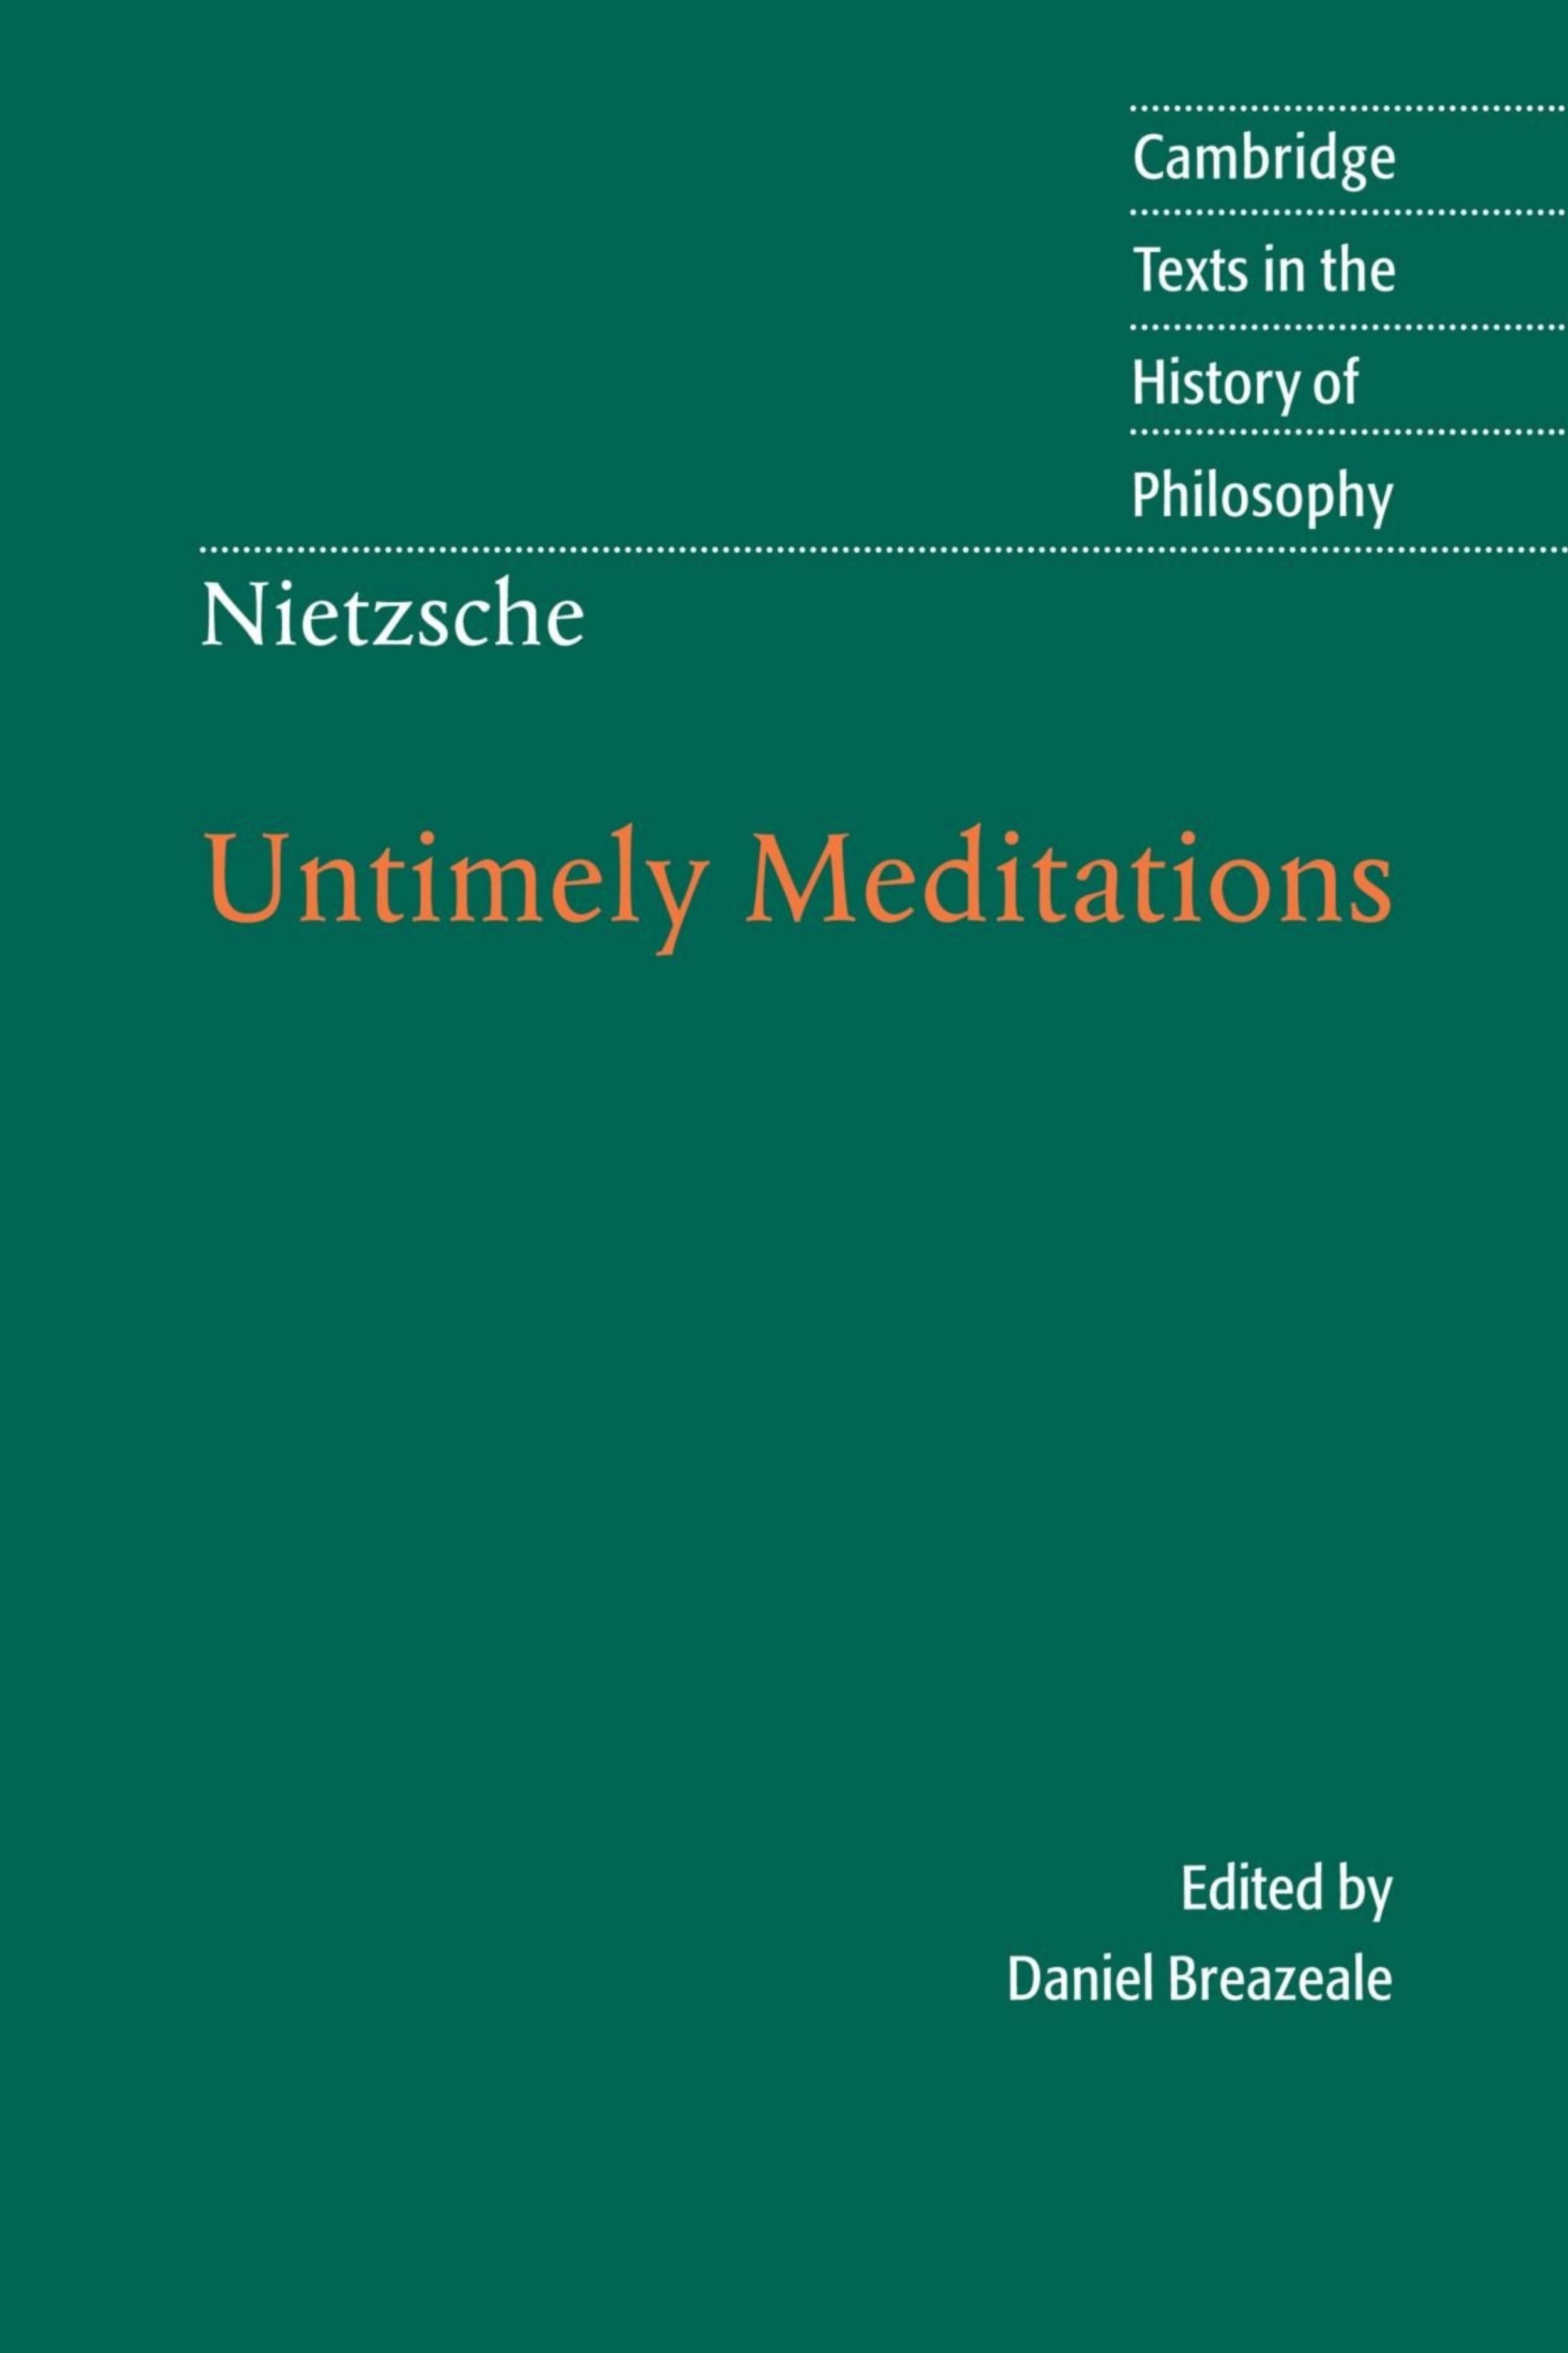 Untimely Meditations by Friedrich Nietzsche